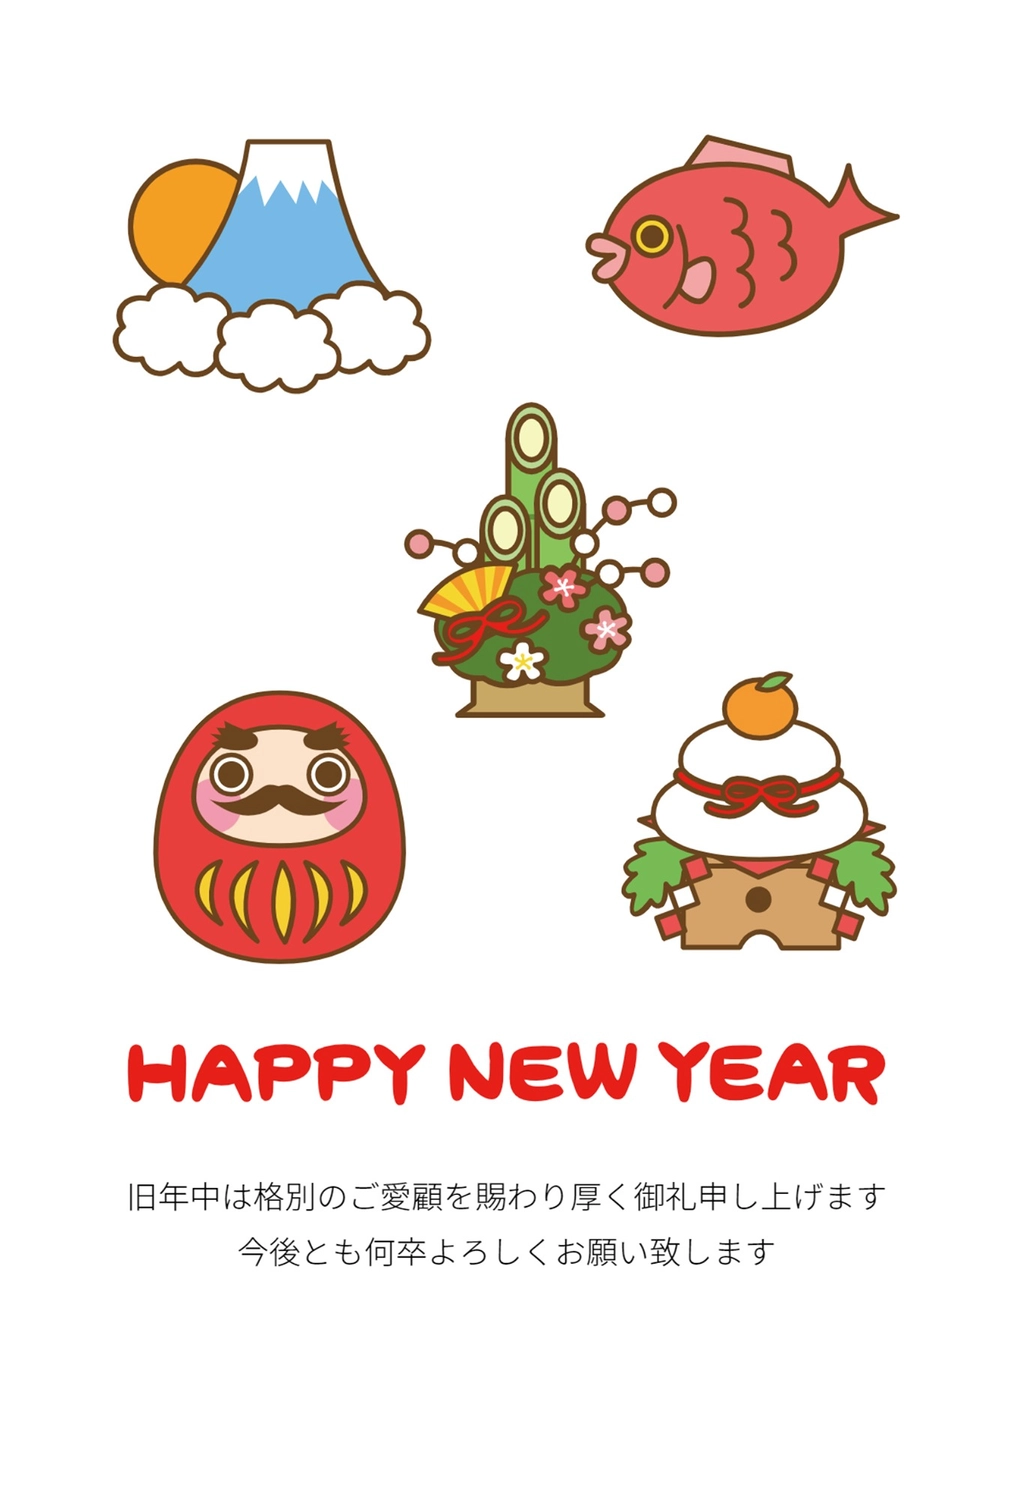 縁起物イラストの年賀状, đơn giản, lề, Chúc mừng năm mới, Thiệp năm mới mẫu